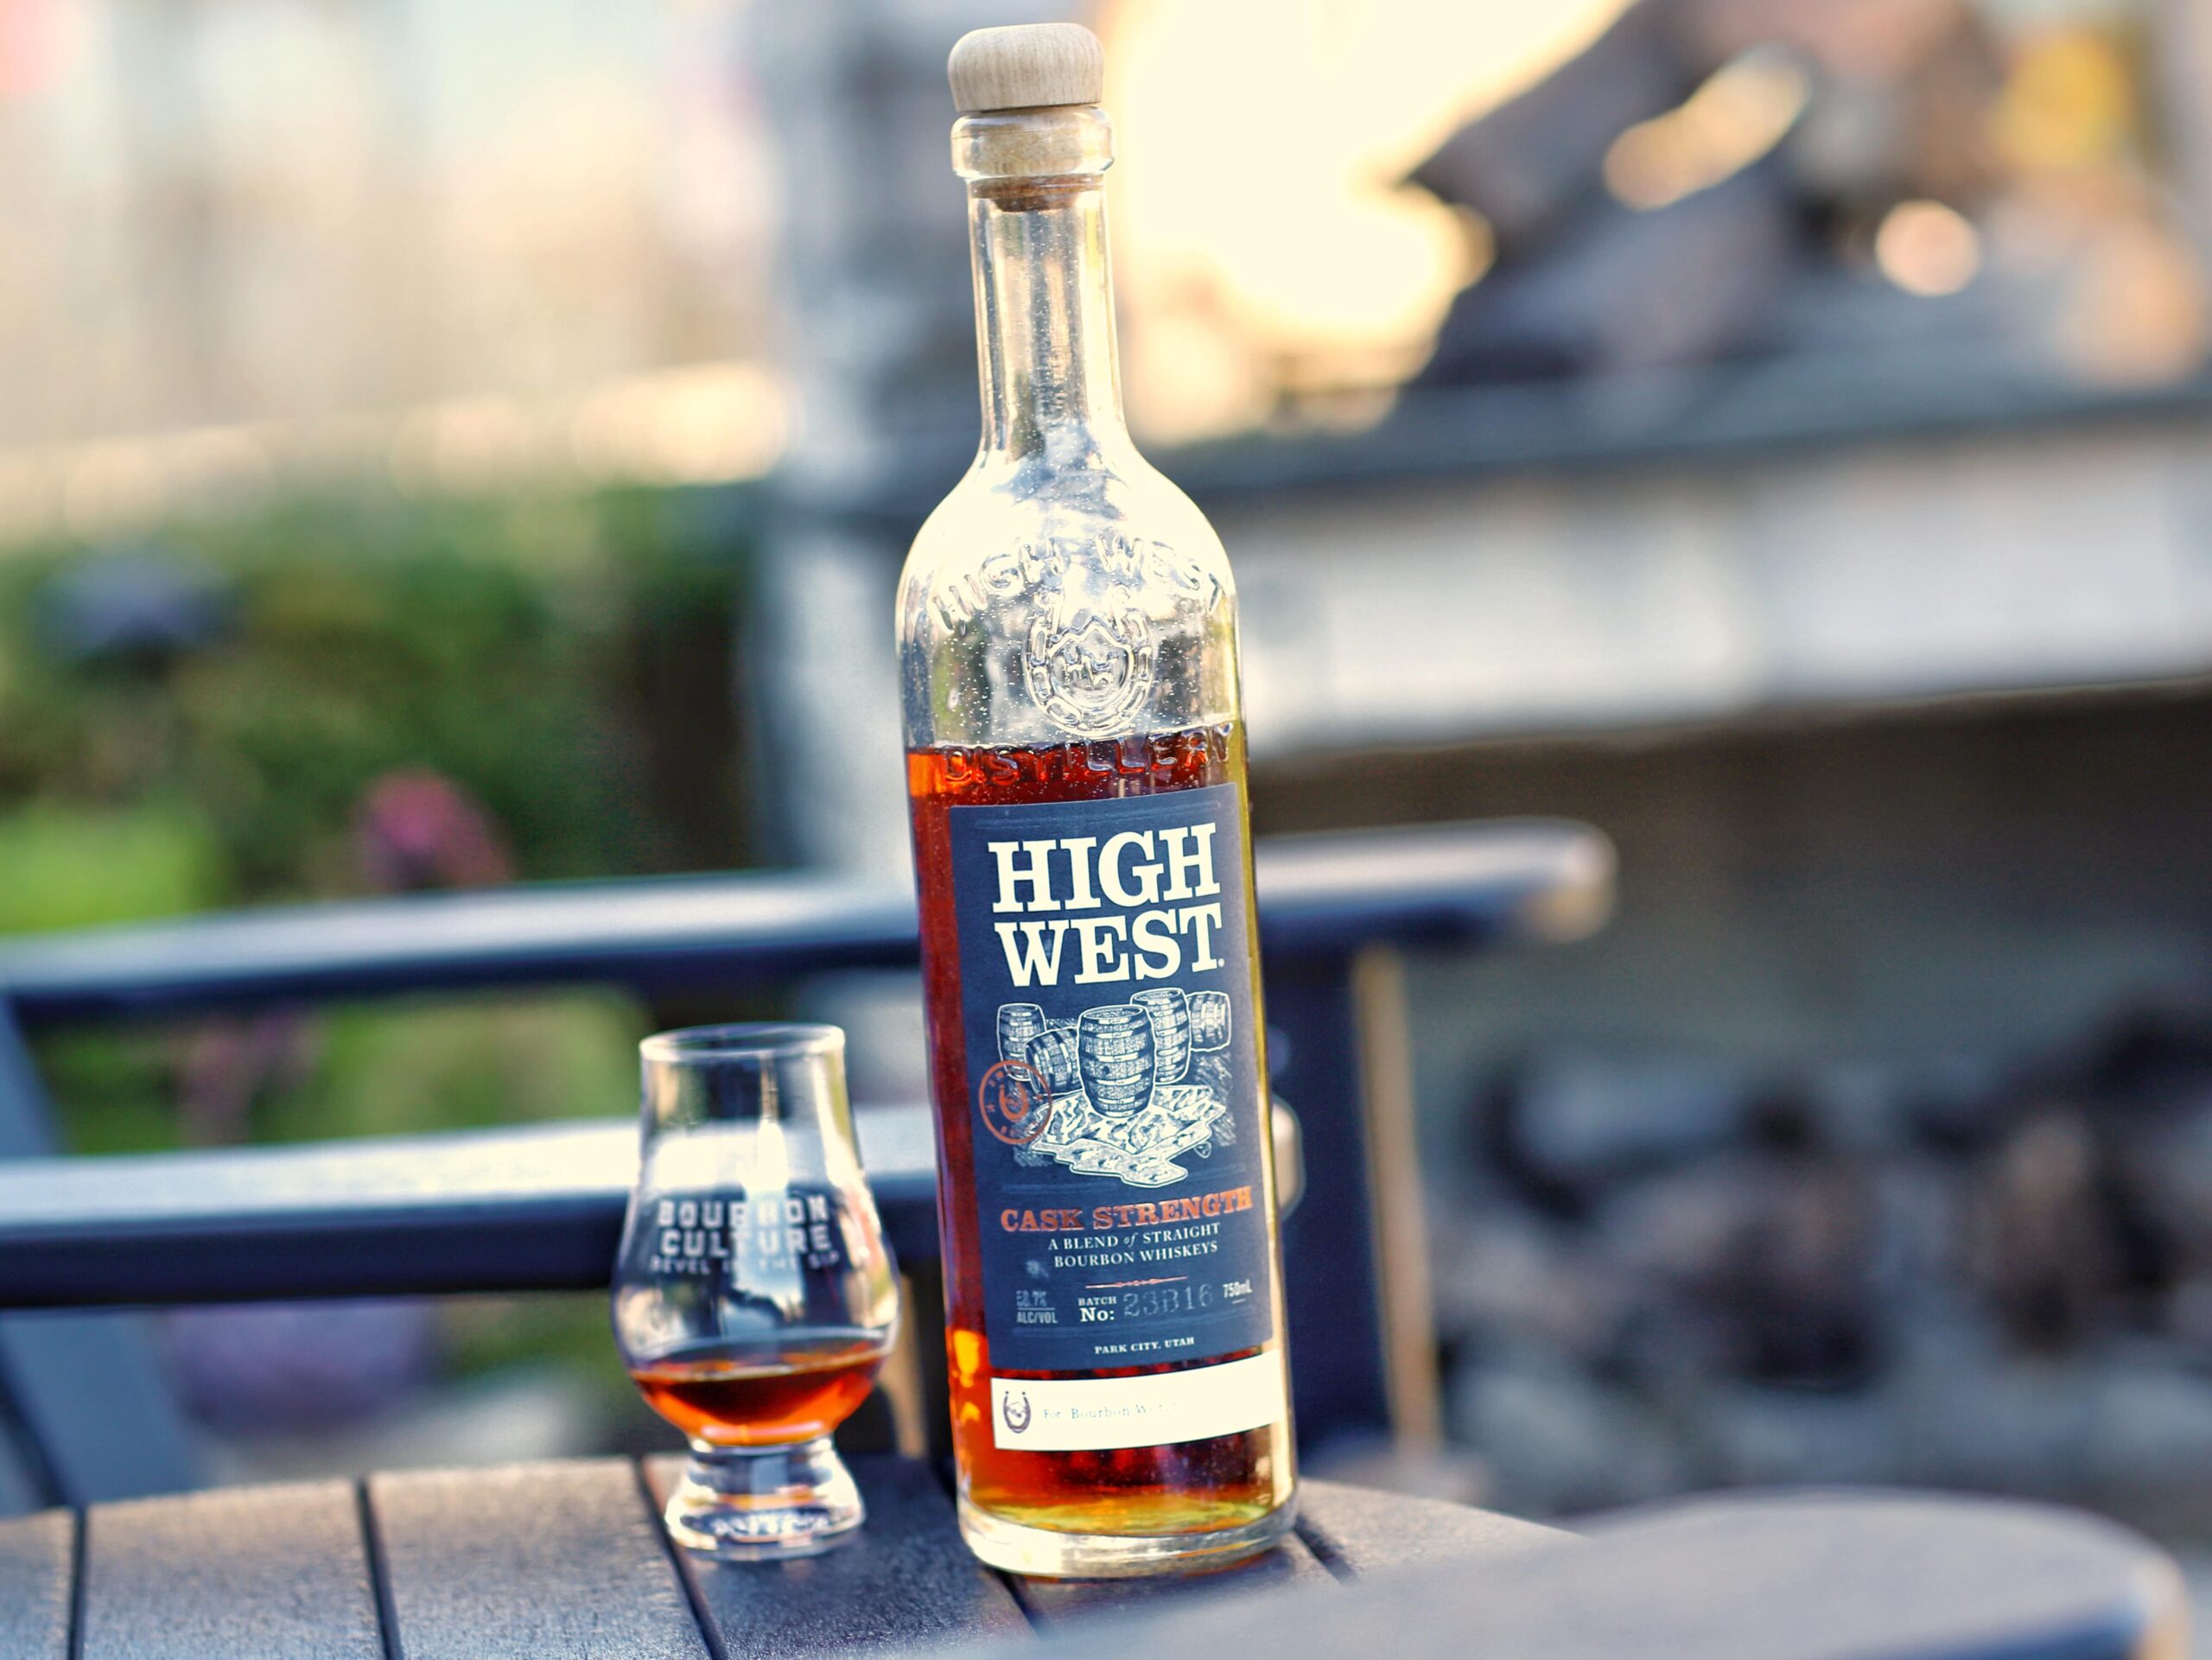 High West Cask Strength Single Barrel Bourbon